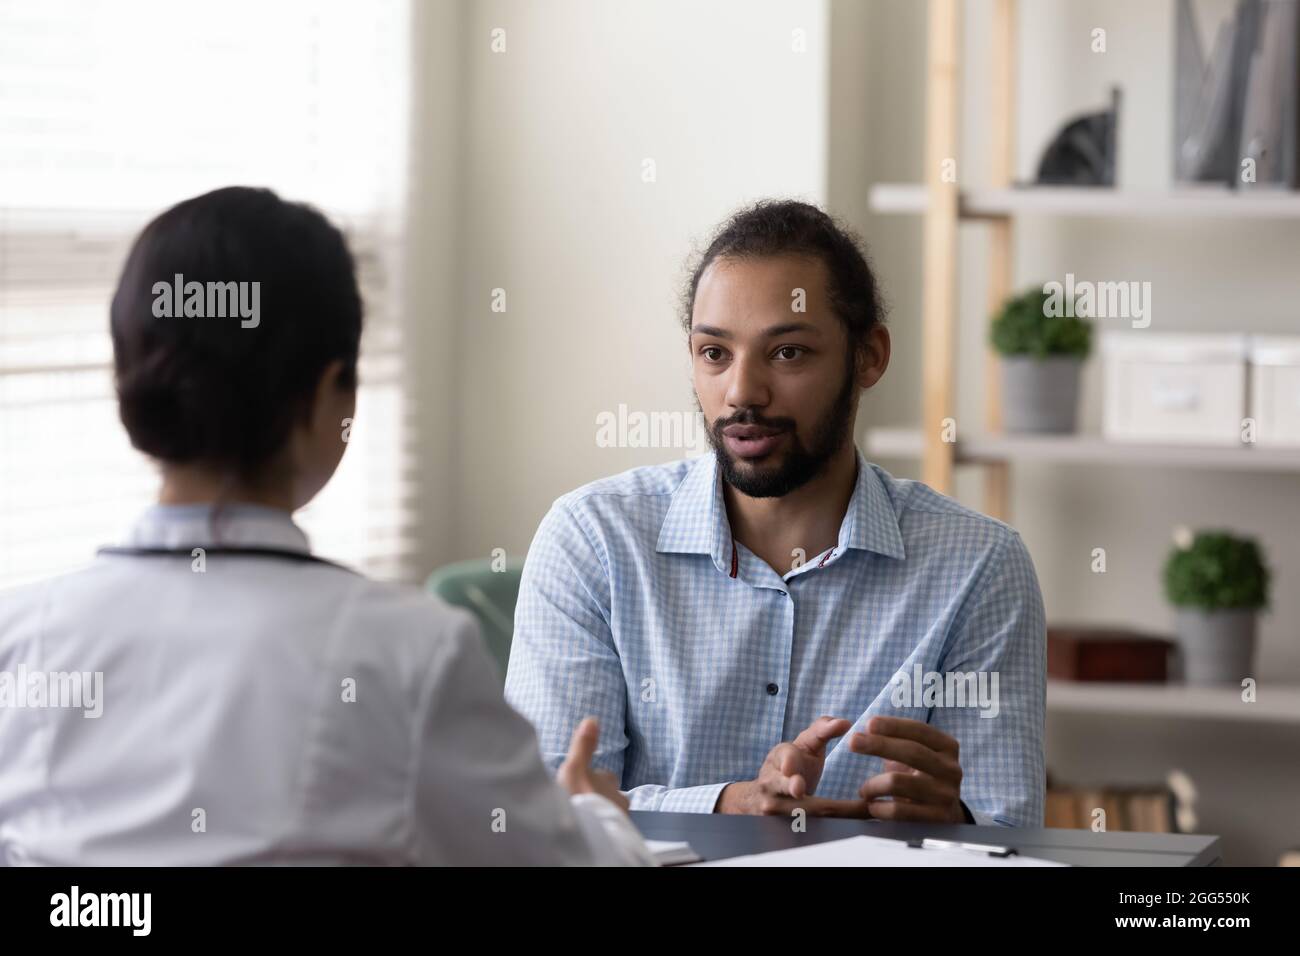 Junge afroamerikanische Patientin, die mit einem Arzt über die Behandlung von Krankheiten spricht. Stockfoto